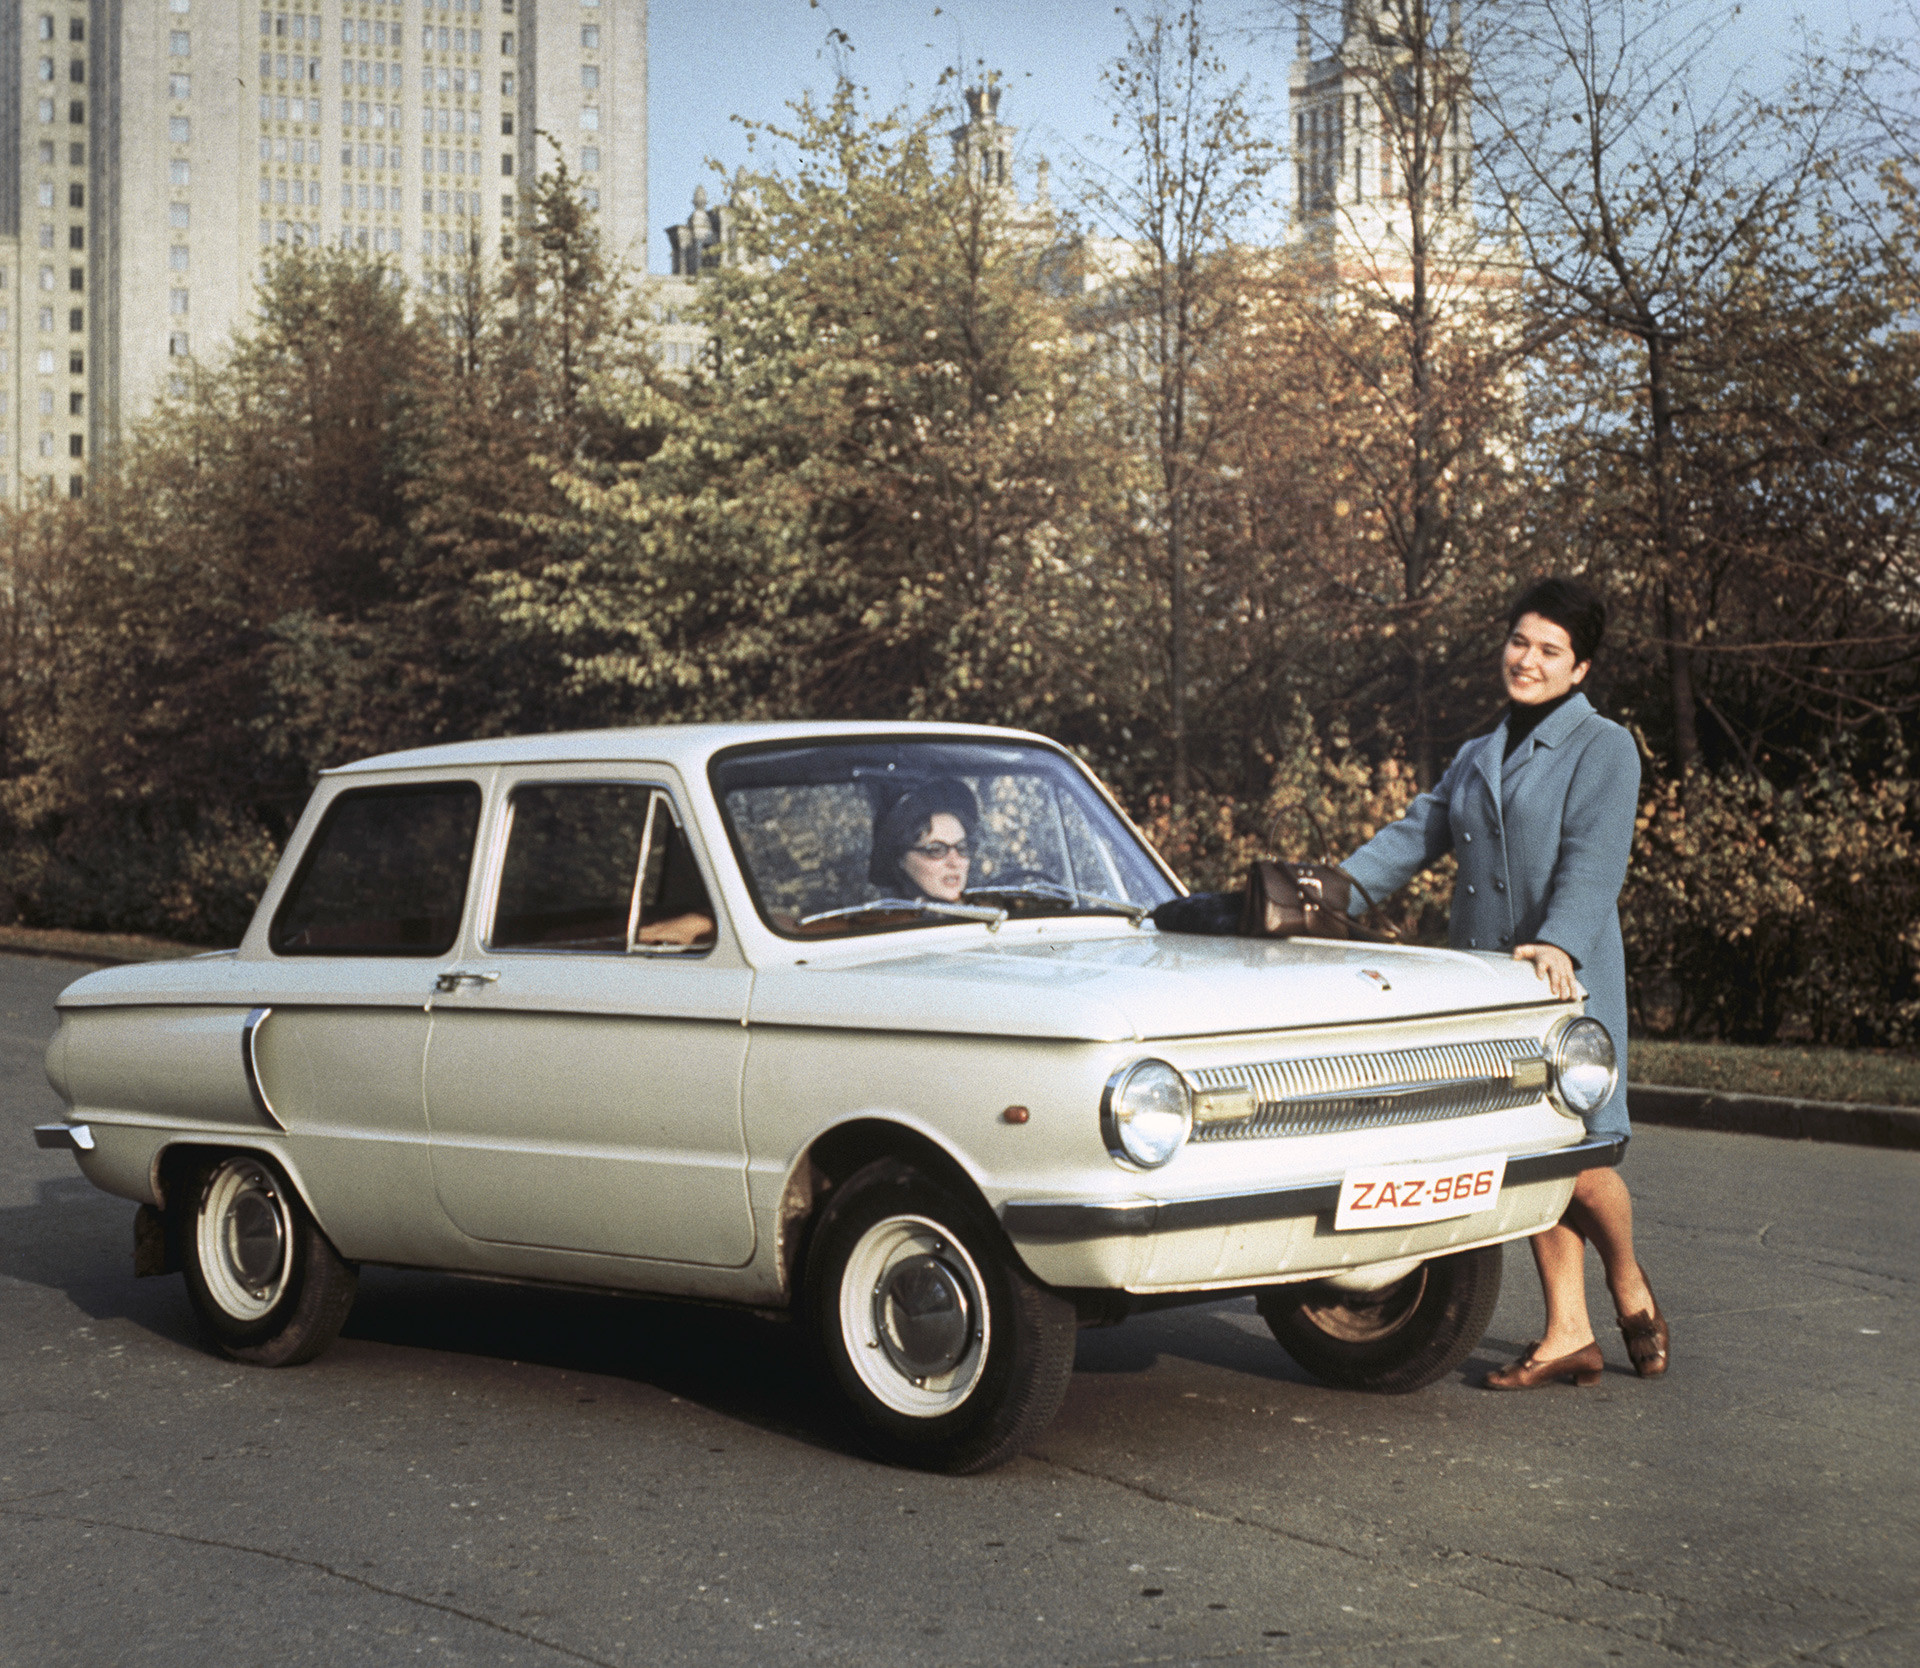 Сколько стоил Запорожец и другие советские авто в сравнении с иномарками